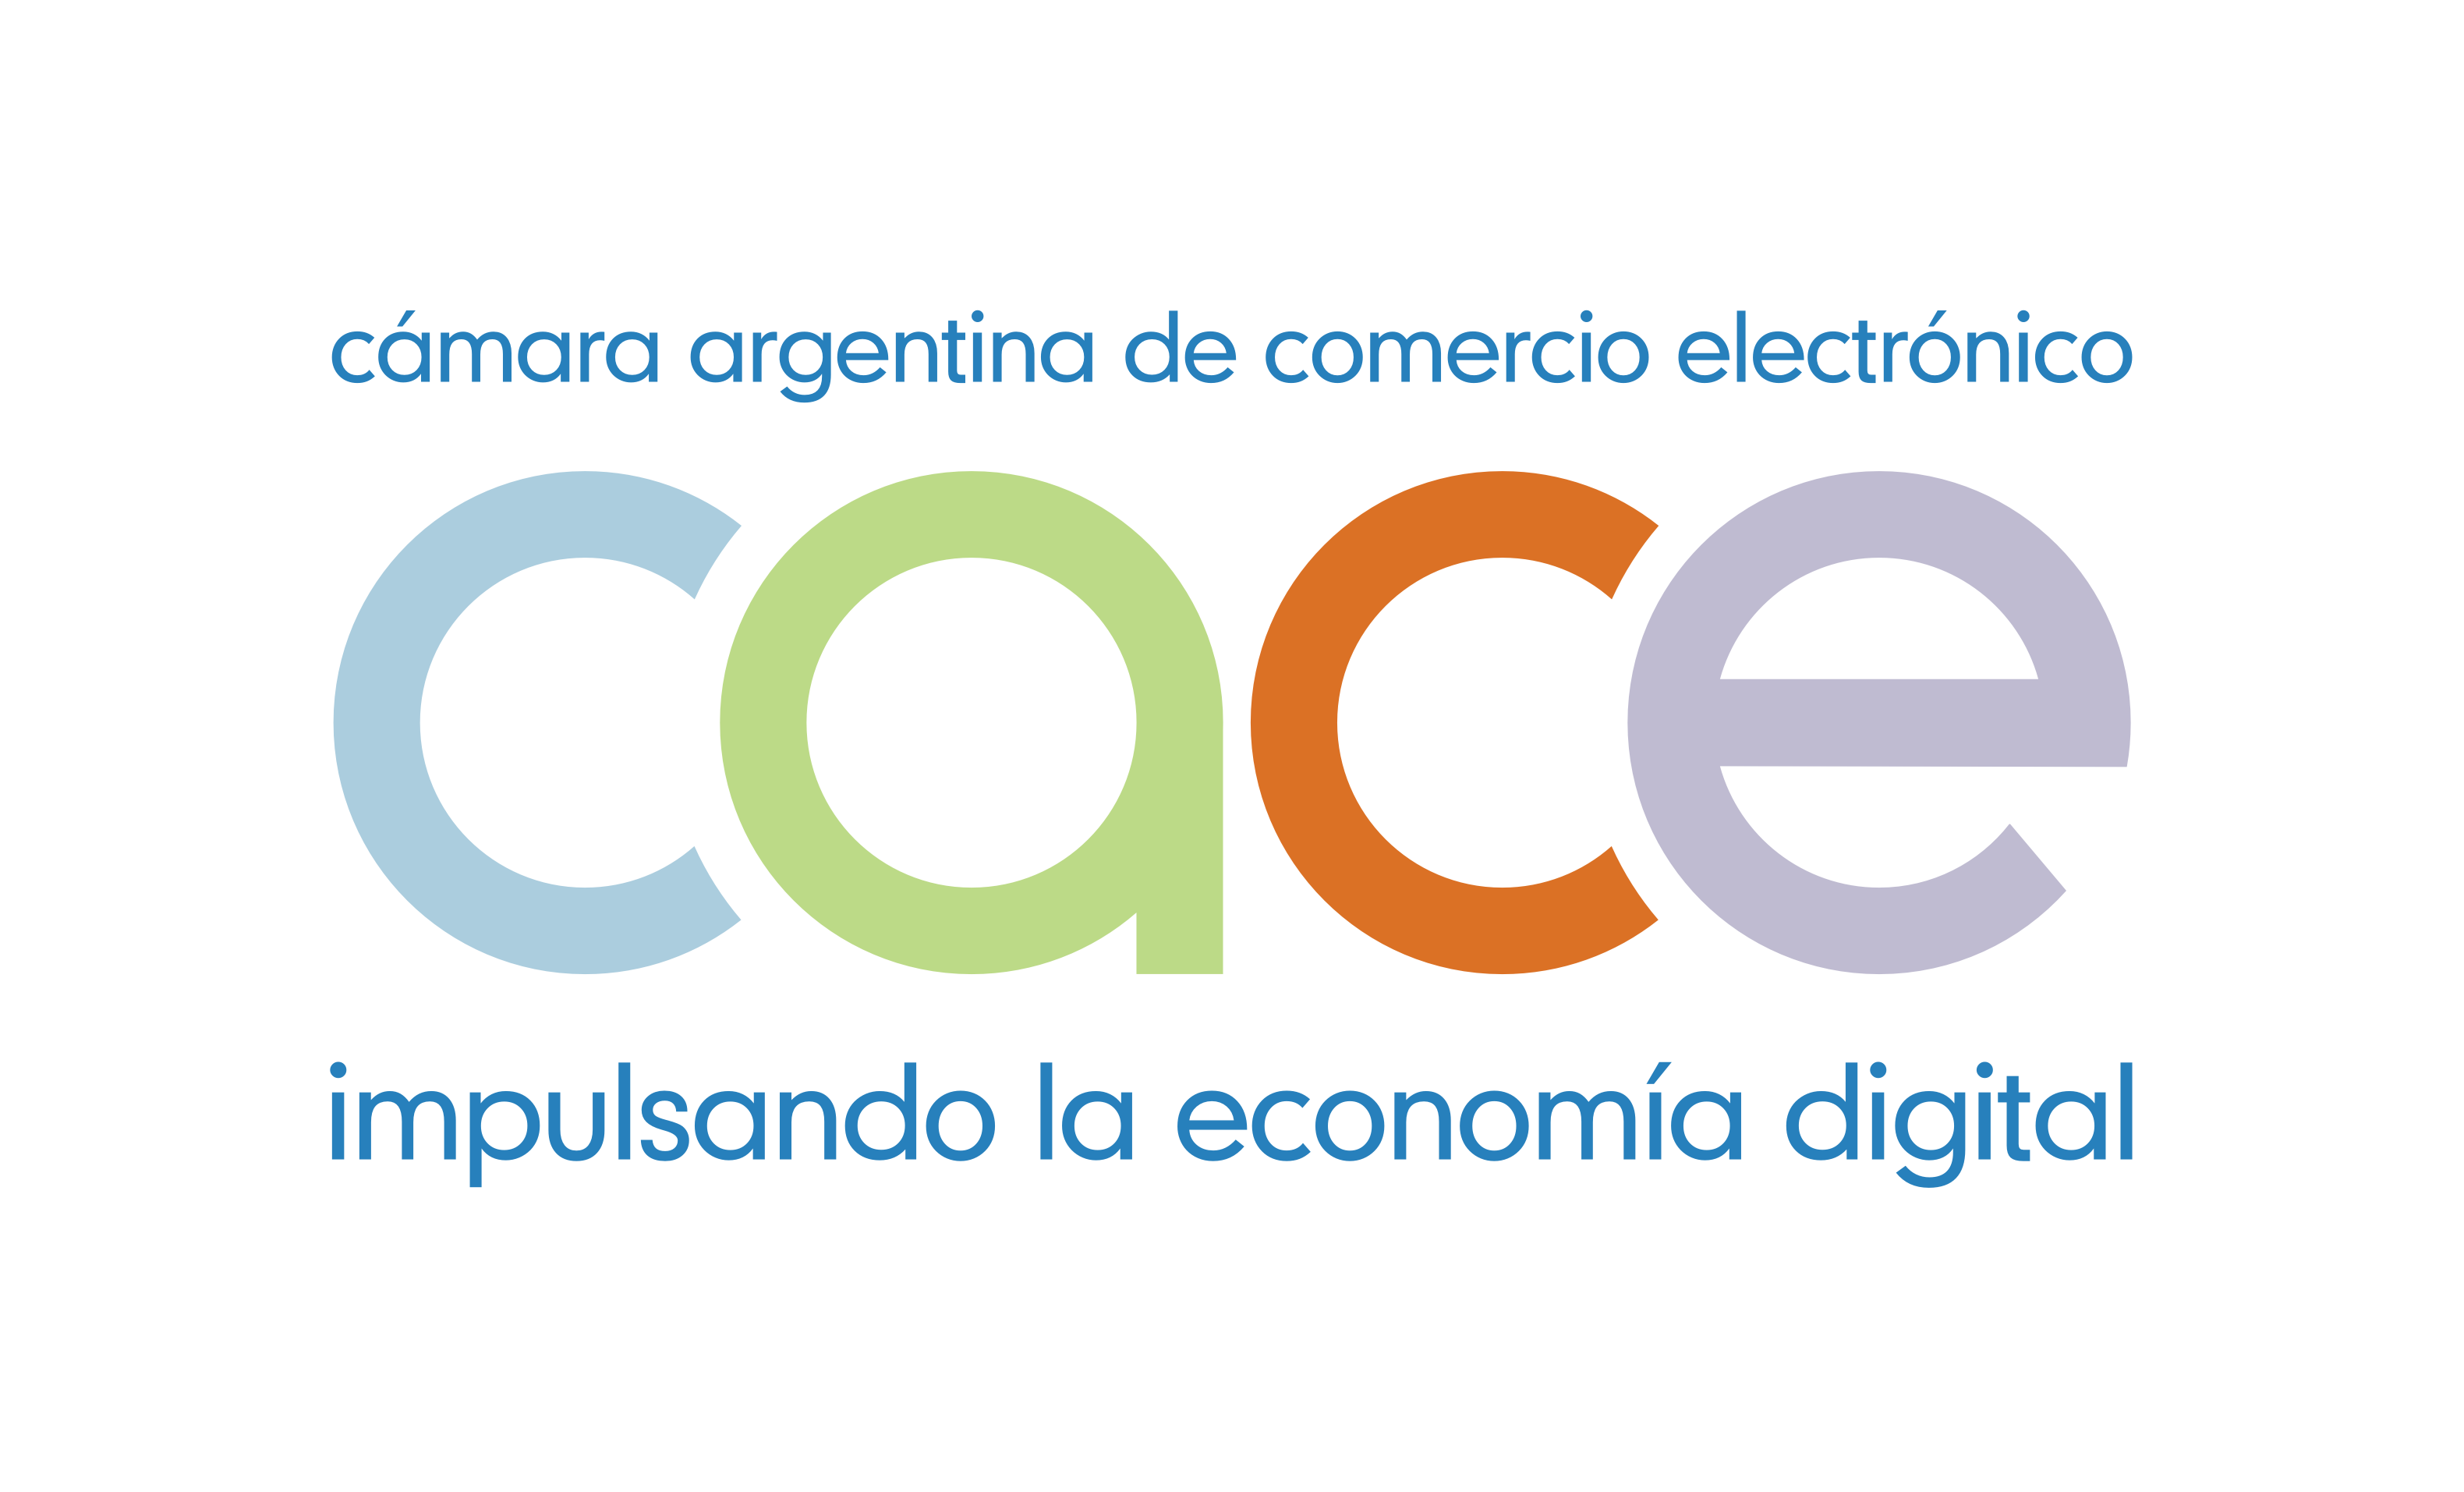 Cámara argentina de comercio electronico